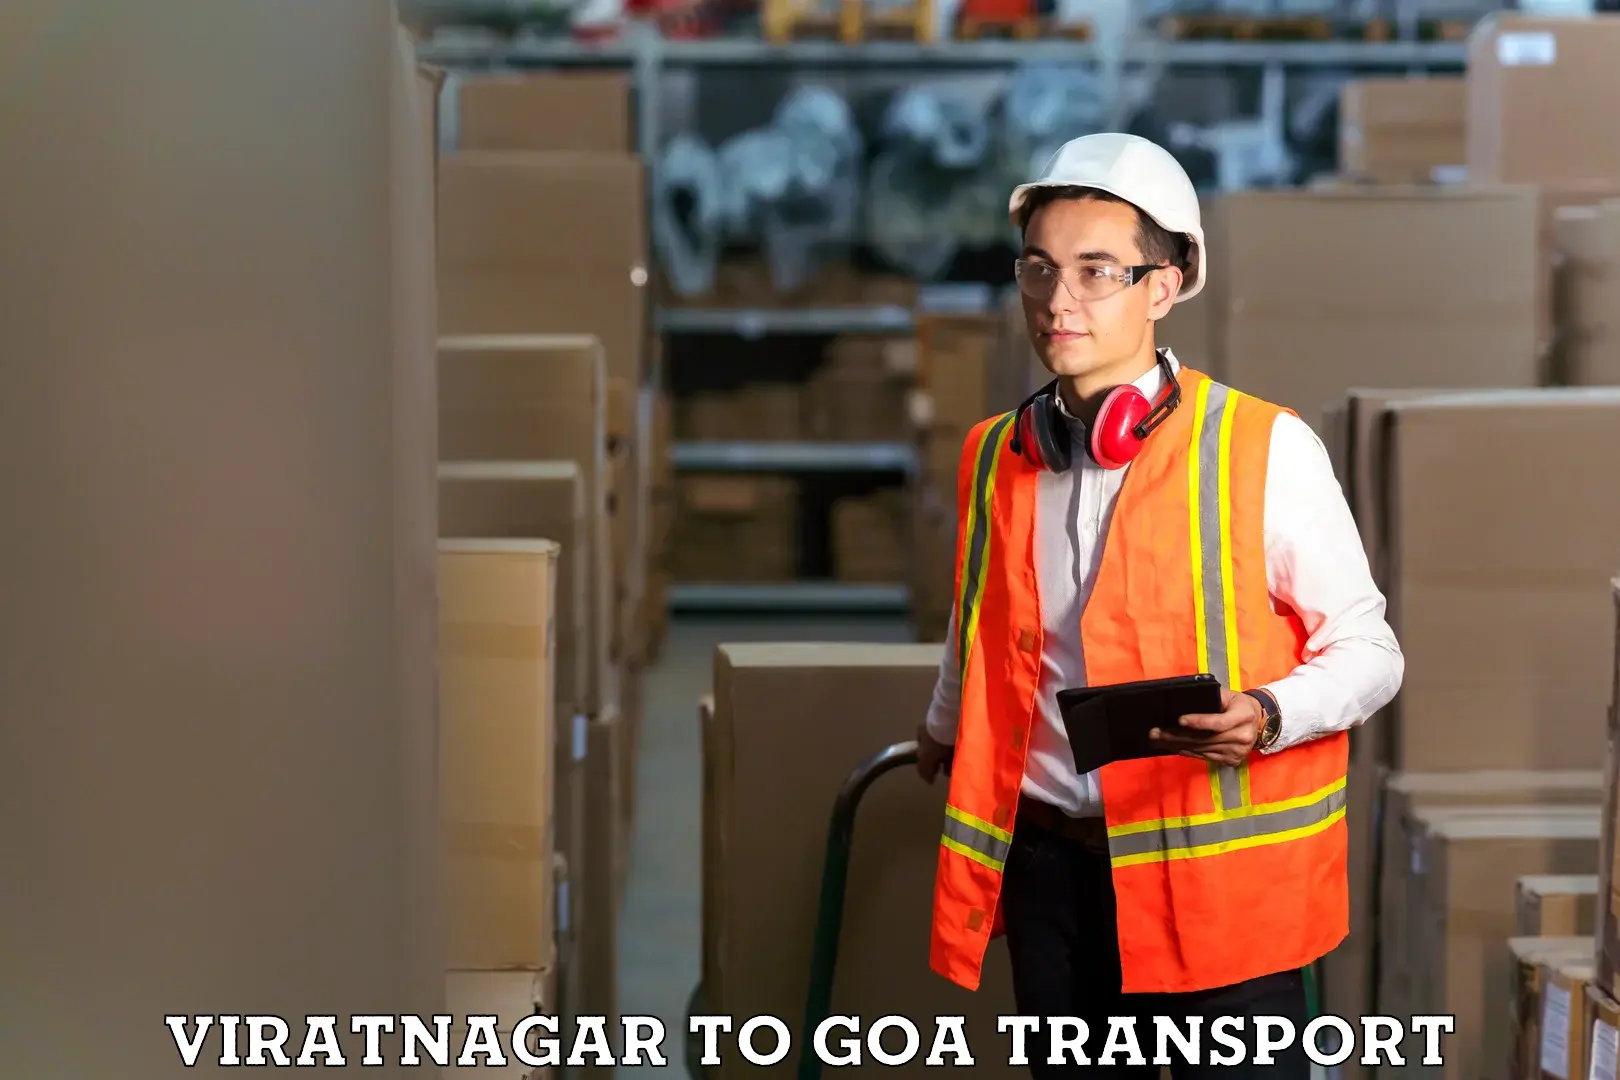 Daily transport service Viratnagar to Sanvordem